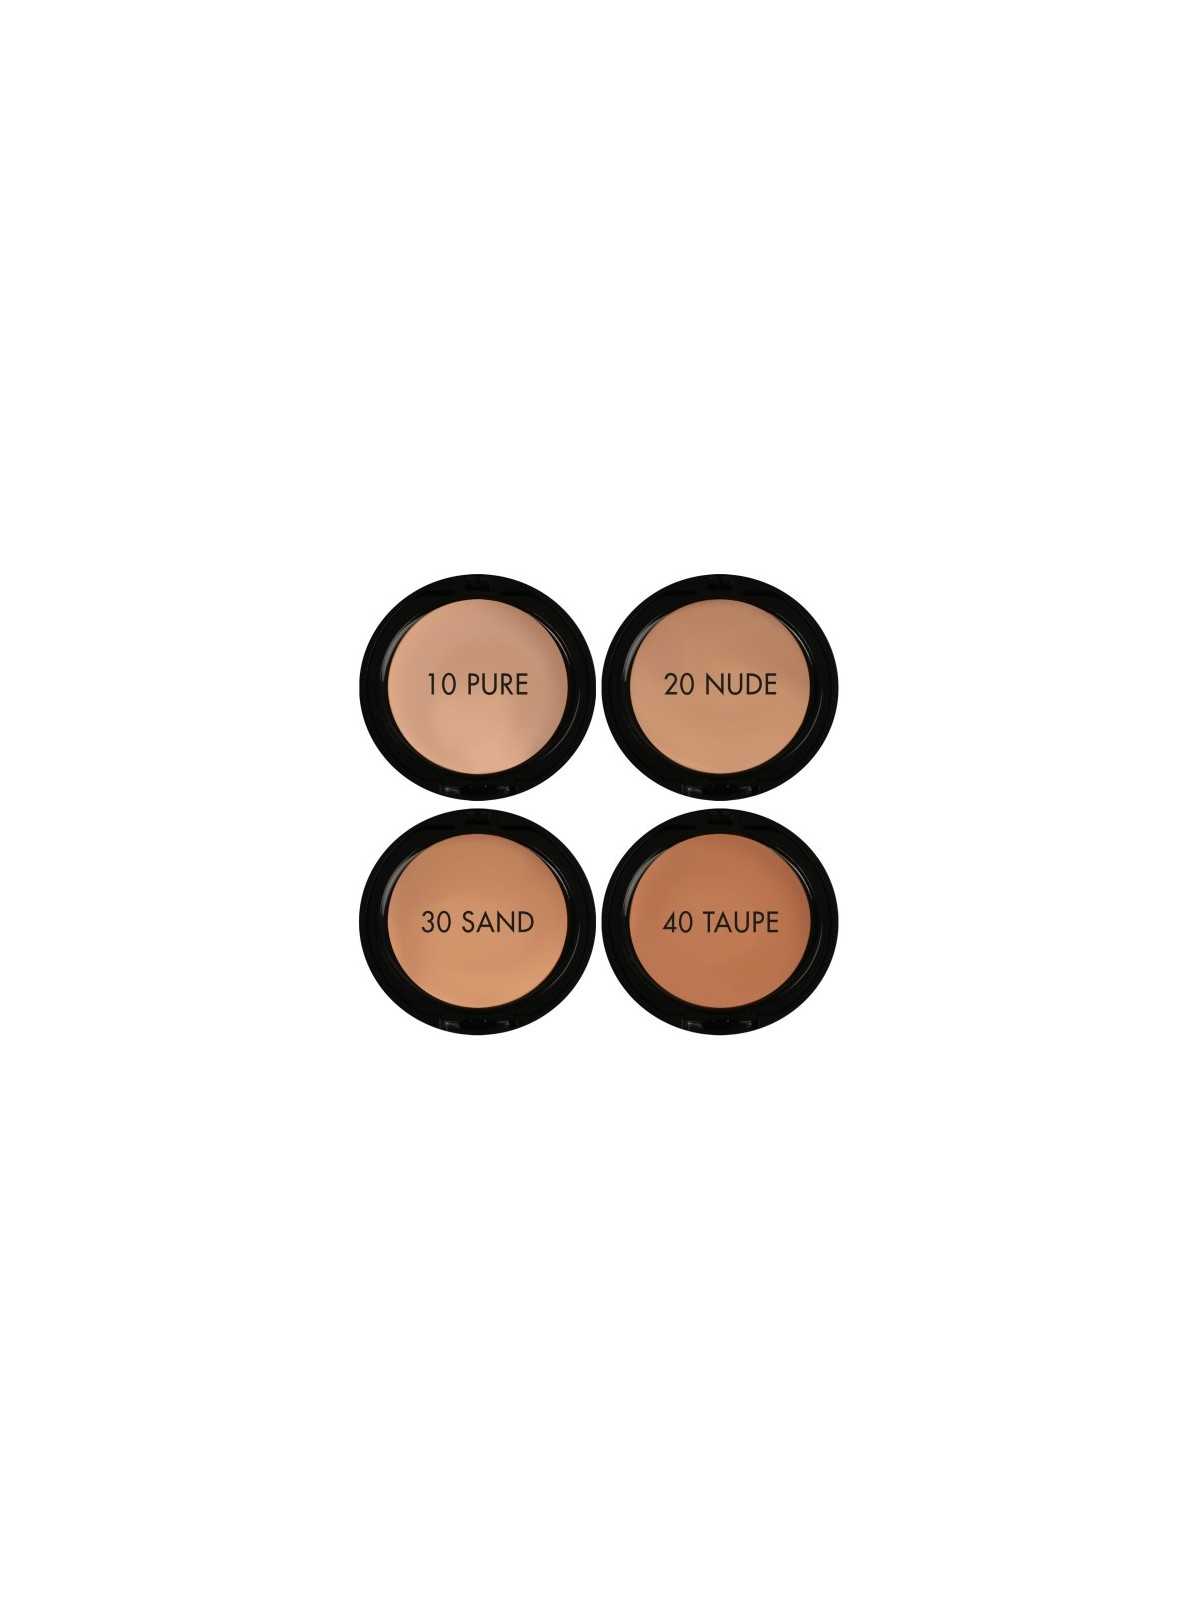 Comprar Base de maquillaje Perfect Compact Foundation 50+ (30 SAND) en Maquillaje por sólo 10,95 € o un precio específico de 10,95 € en Thalie Care